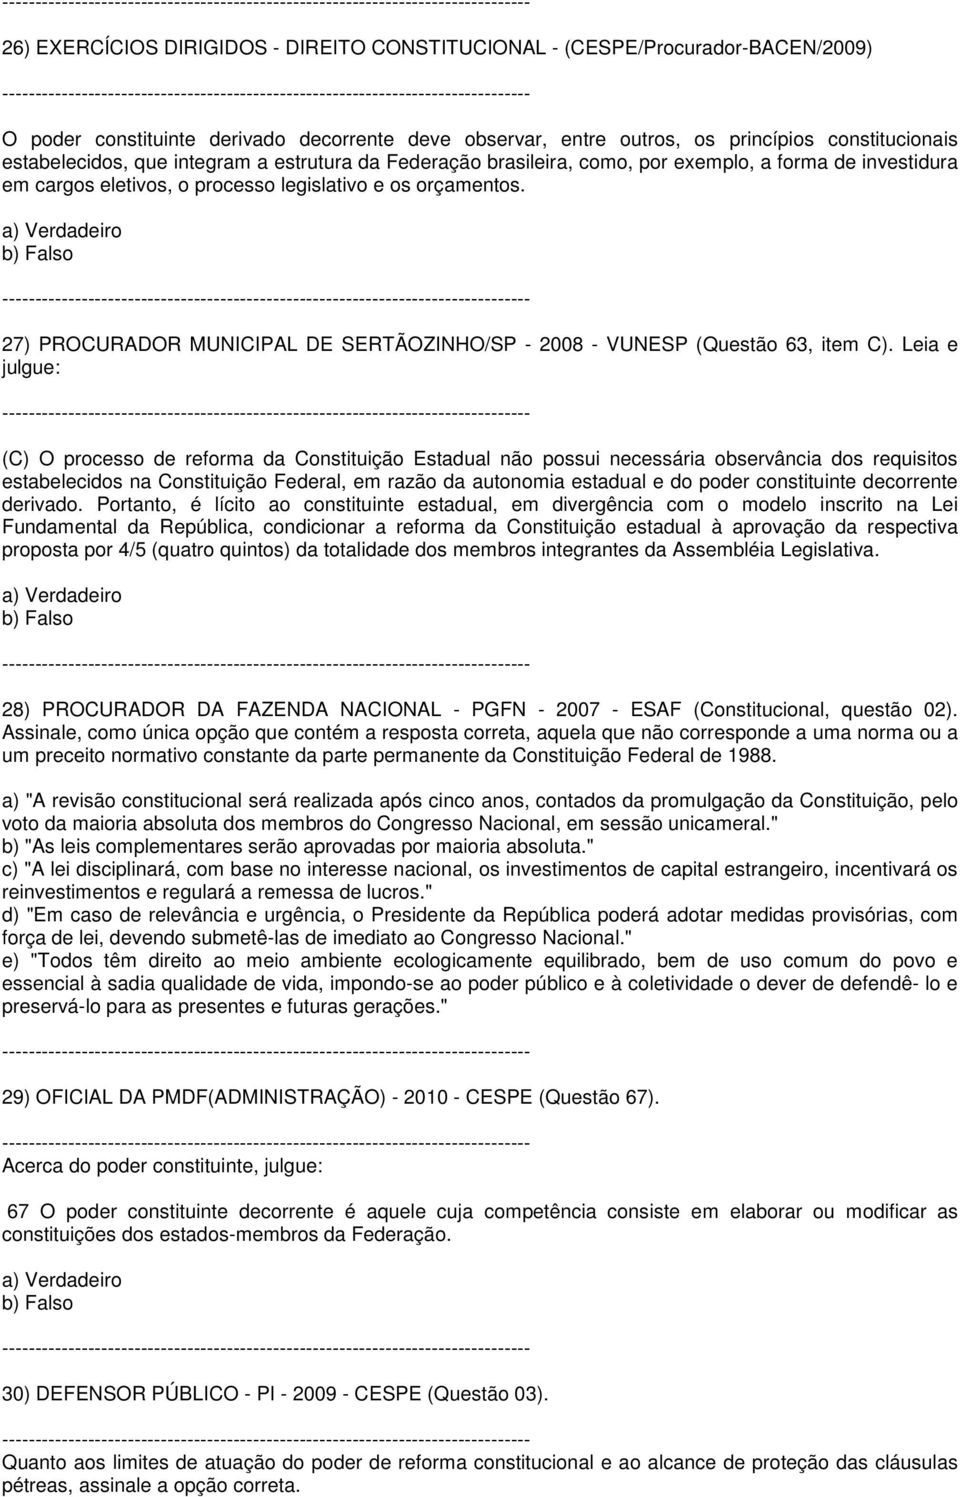 27) PROCURADOR MUNICIPAL DE SERTÃOZINHO/SP - 2008 - VUNESP (Questão 63, item C).